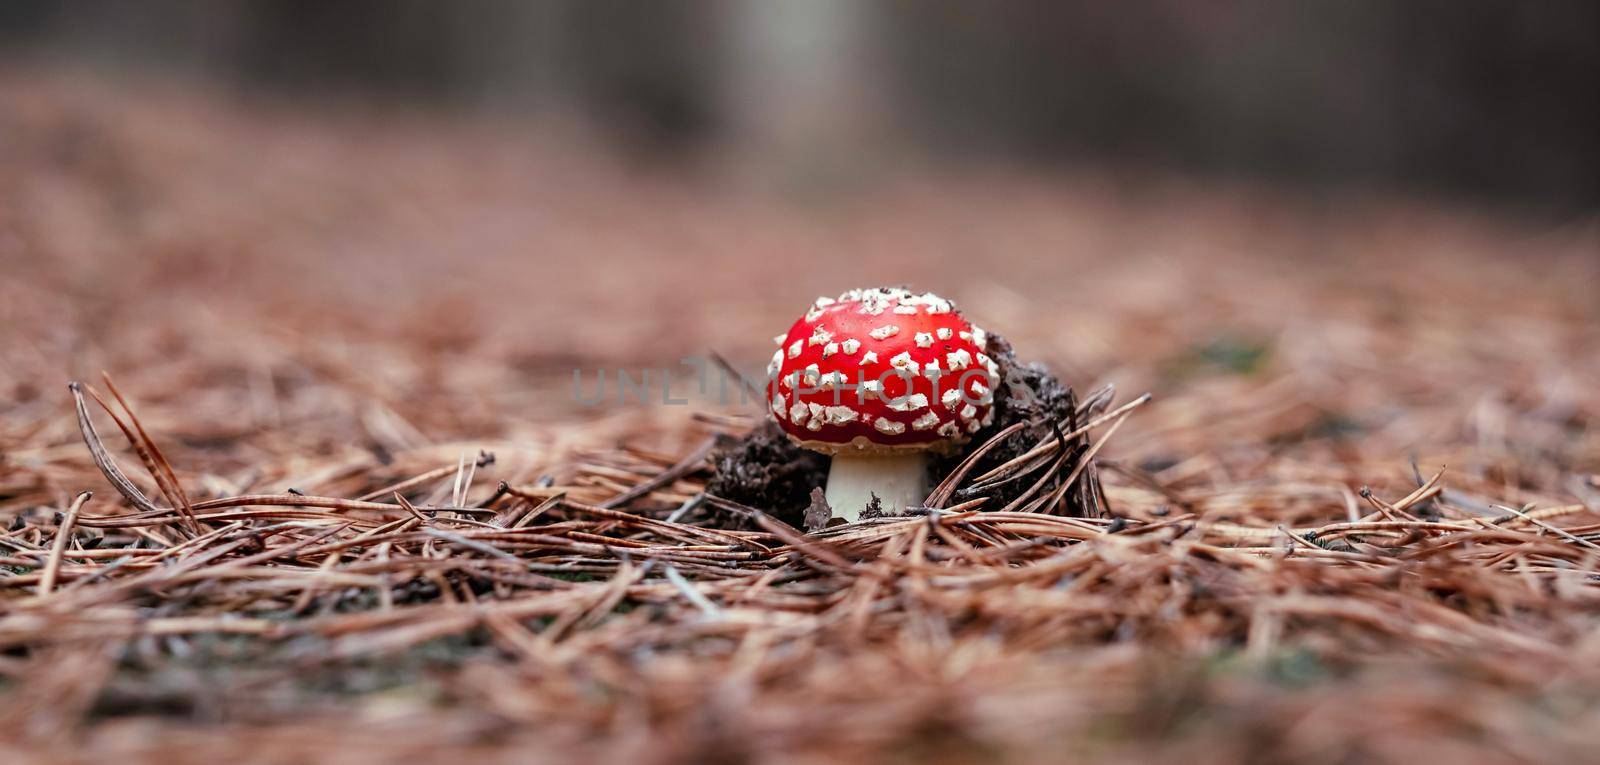 Fly agaric mushroom in the wood by GekaSkr